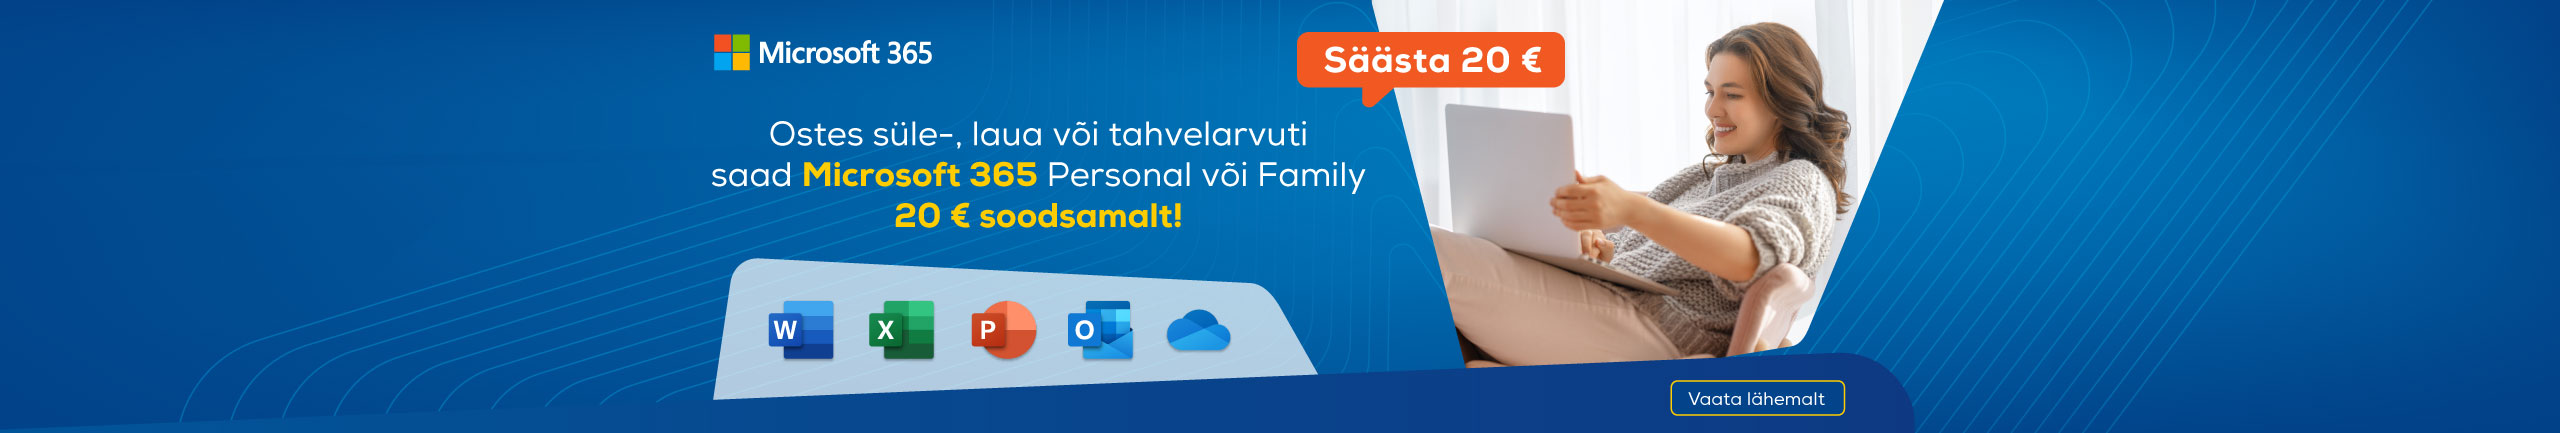 Kõikide süle-, laua- ja tahvelarvutitega Microsoft 365 Personal või Family tarkvara 20€ soodsamalt!